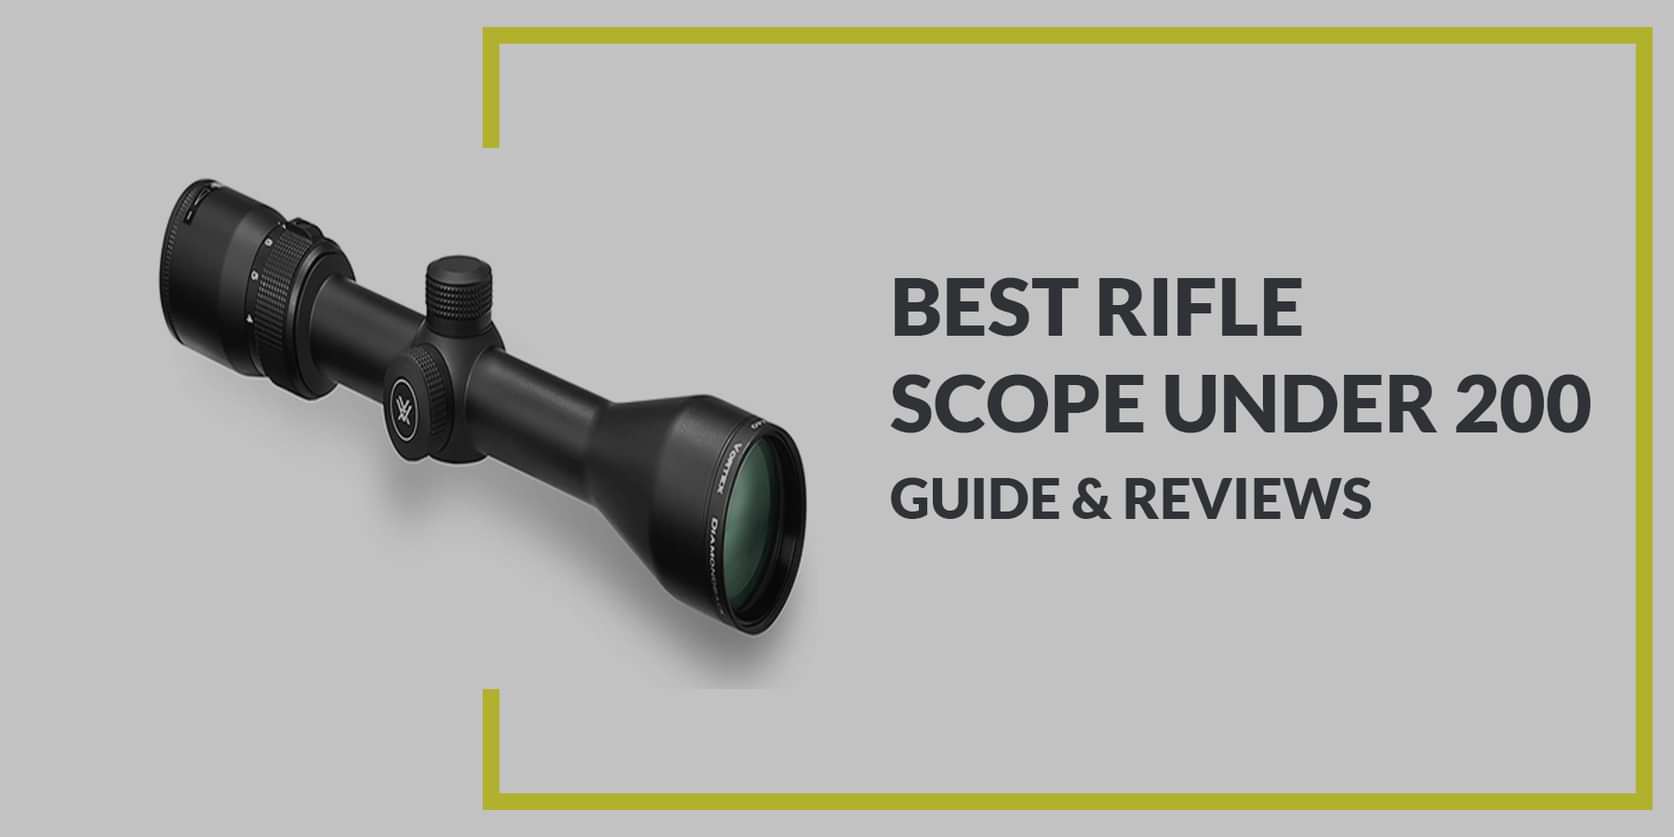 Best Rifle Scope under 200